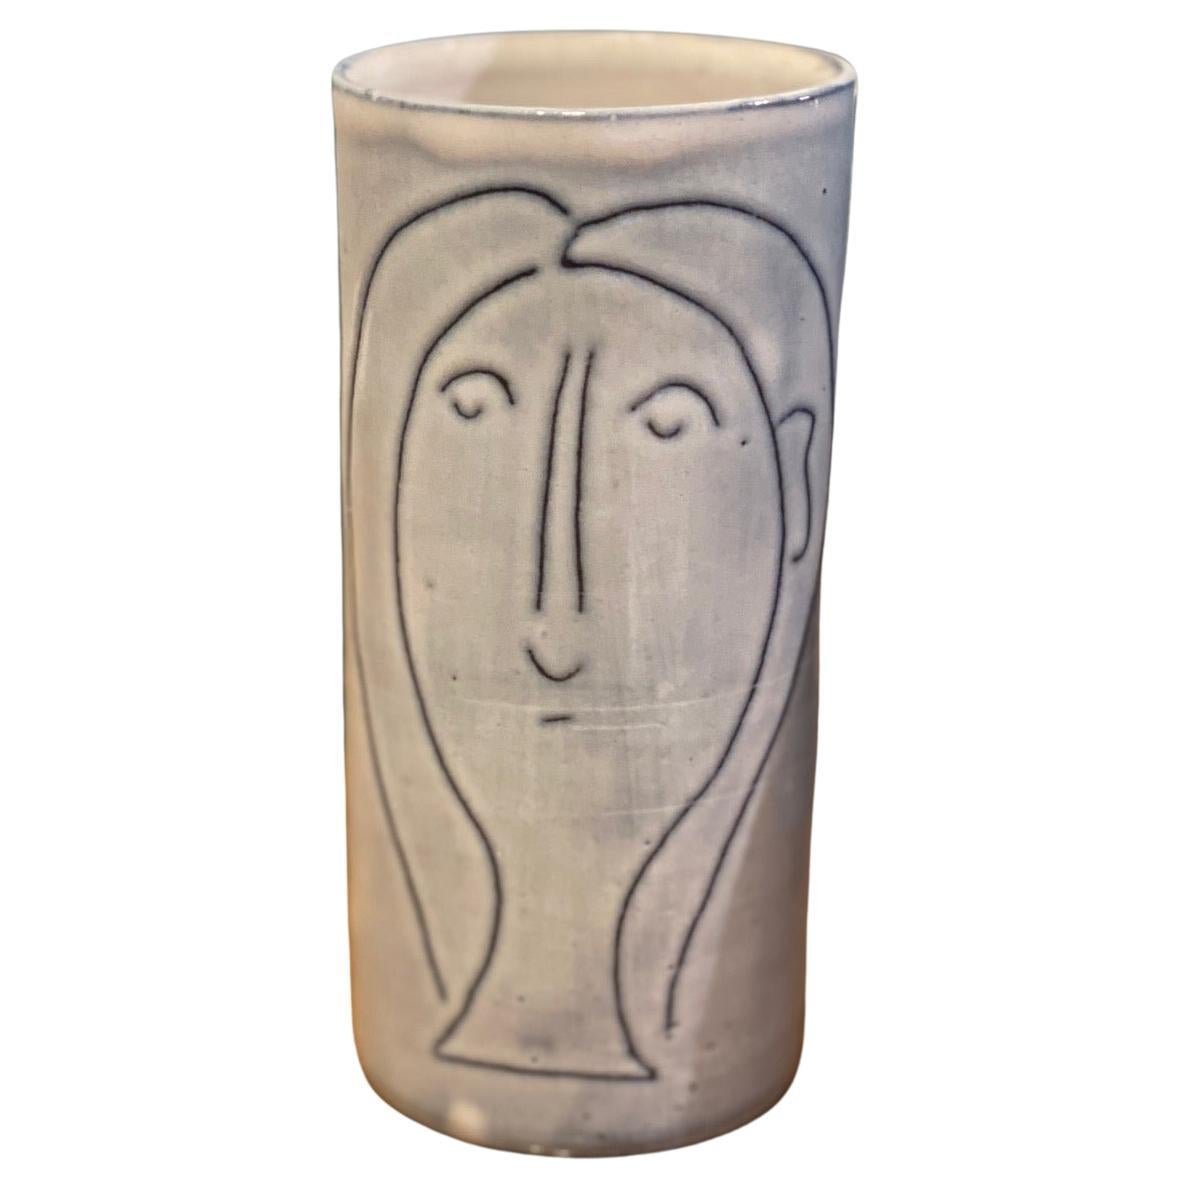 Kleine Vase mit 2 Frauen Gesichtern, signiert von Jacques Innocenti, 1950er Jahre